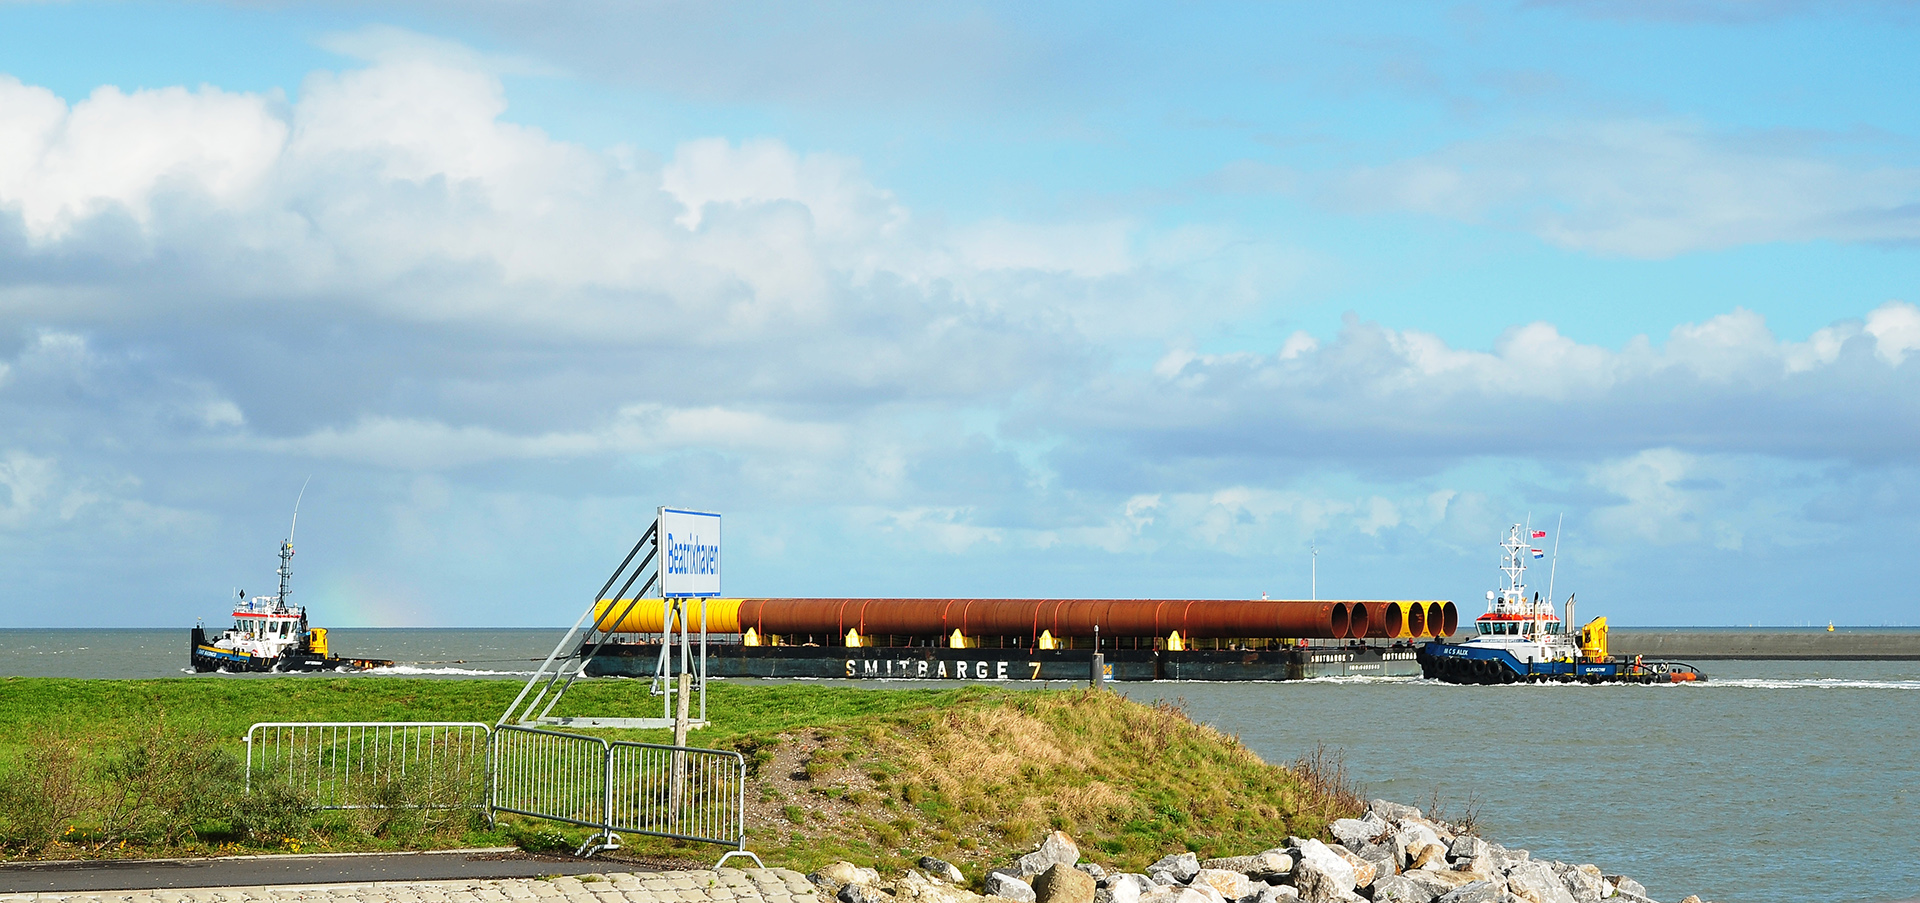 Transportponton mit Röhren, von zwei Schleppern bugsiert, verlässt Eemshaven (Provinz Groningen, NL)